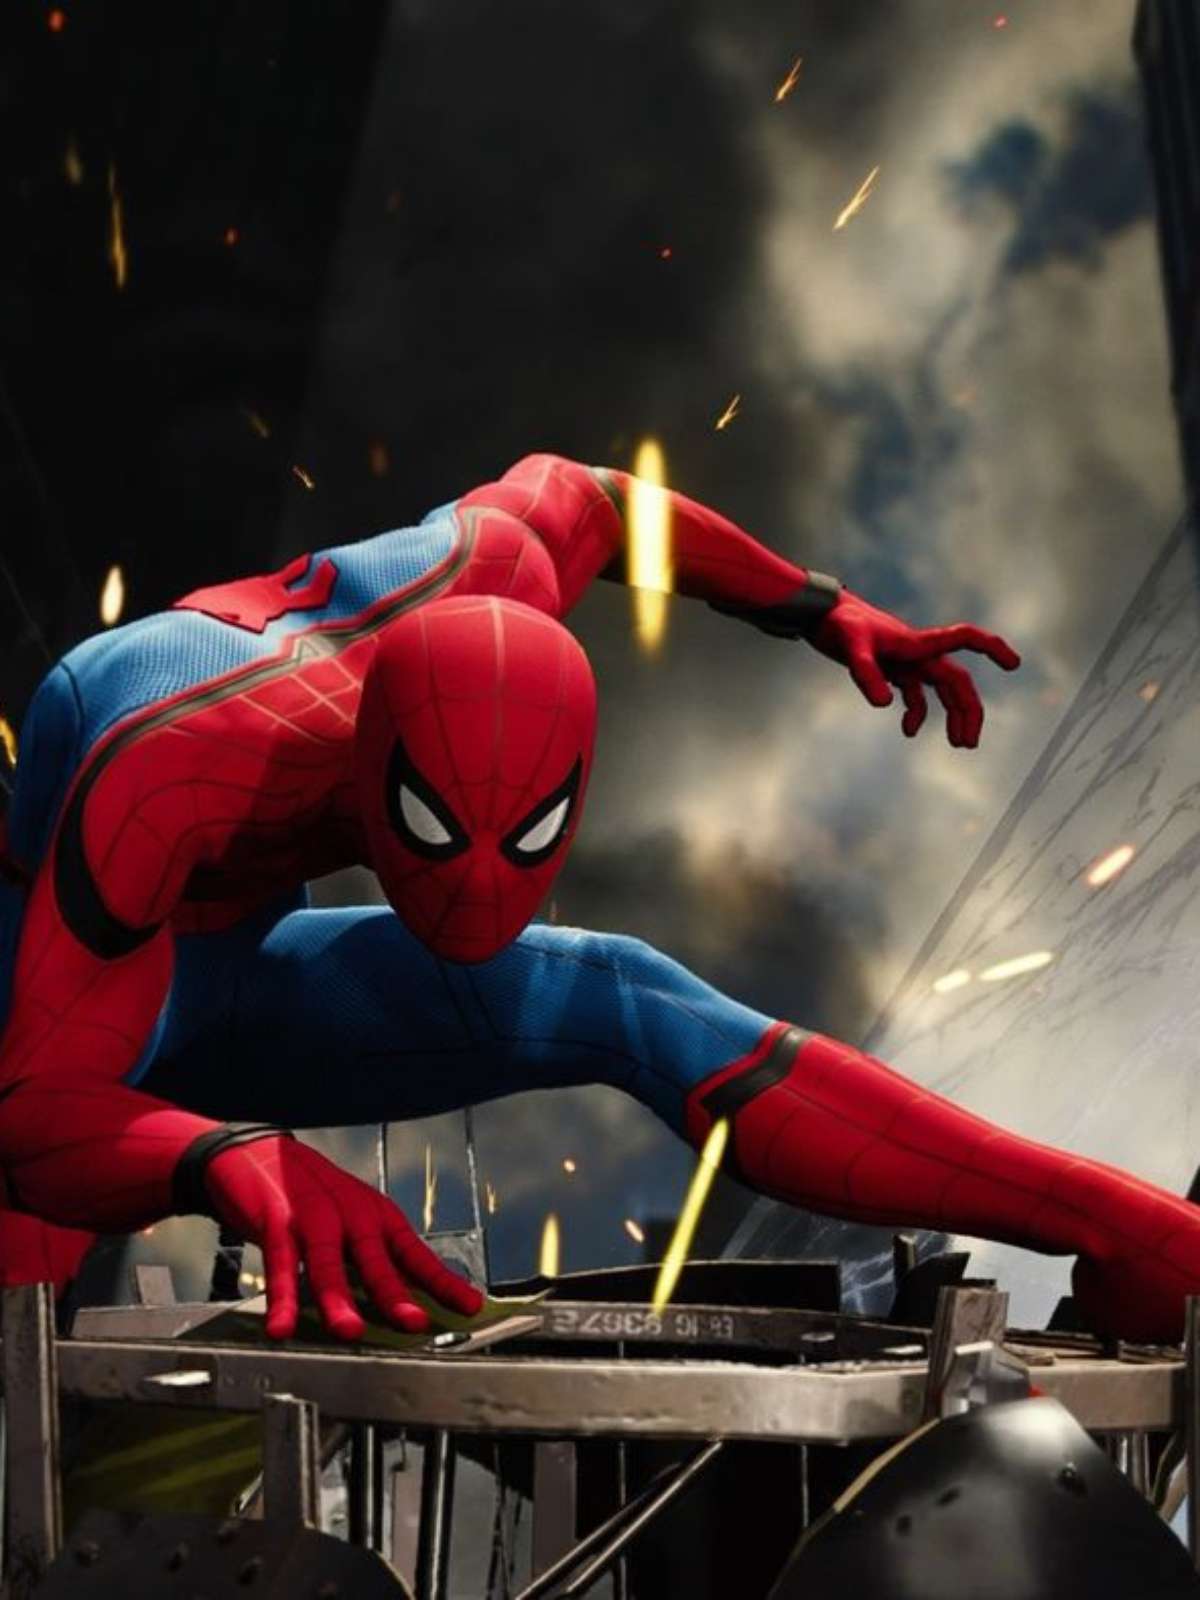 Spider-Man chega ao PC com versão remaster; veja detalhes e lançamento